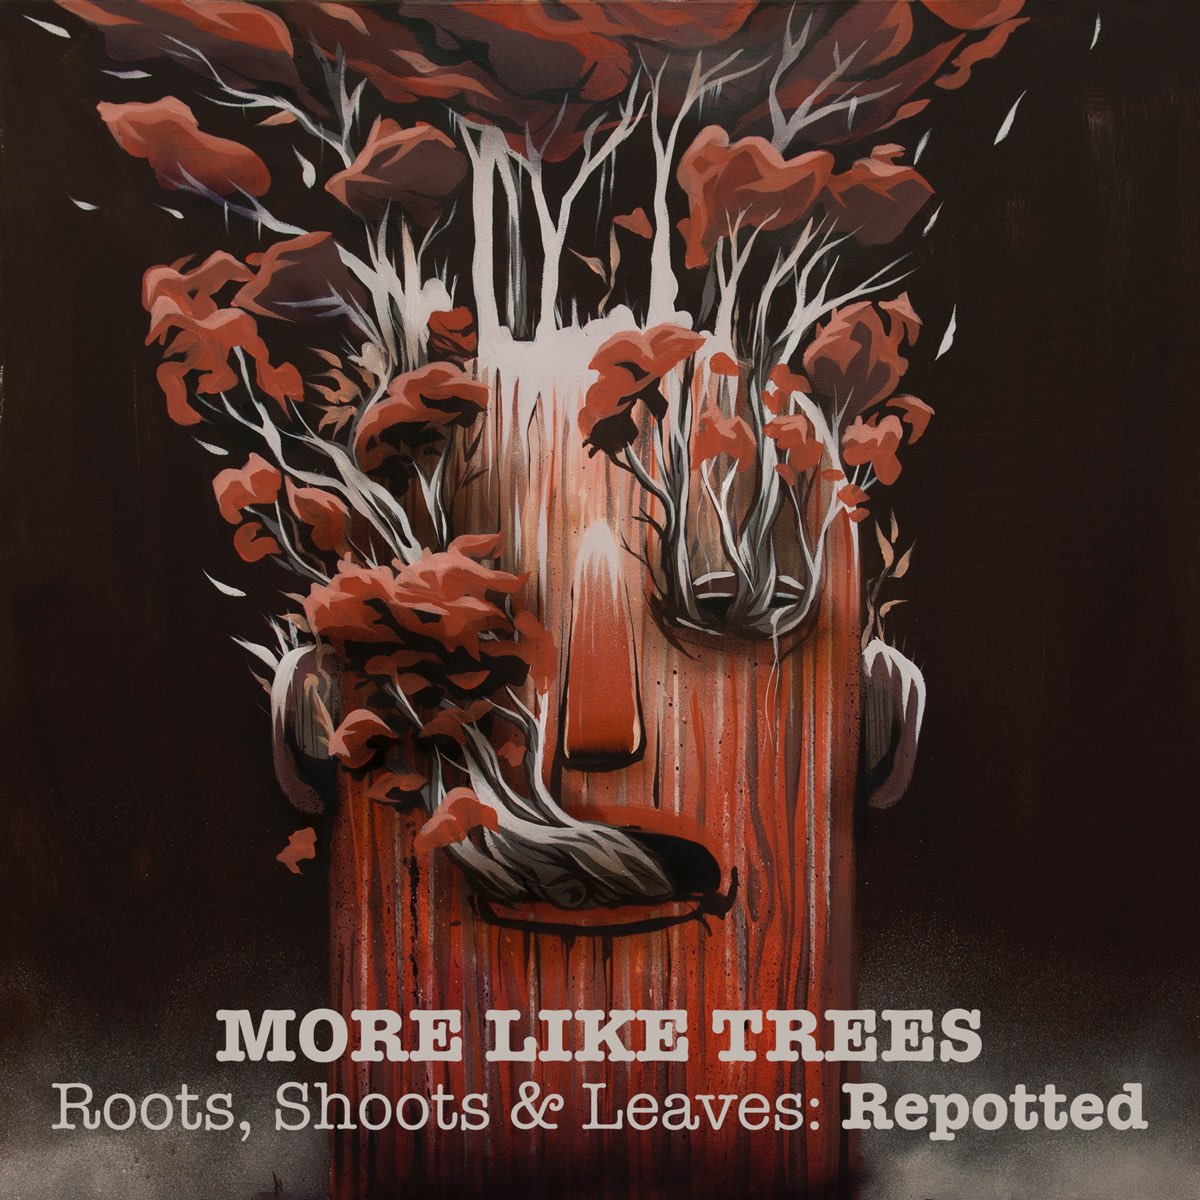 Дерево исполнителей. Собака для обложки трека. More like Trees. Roots and shoots. They like trees